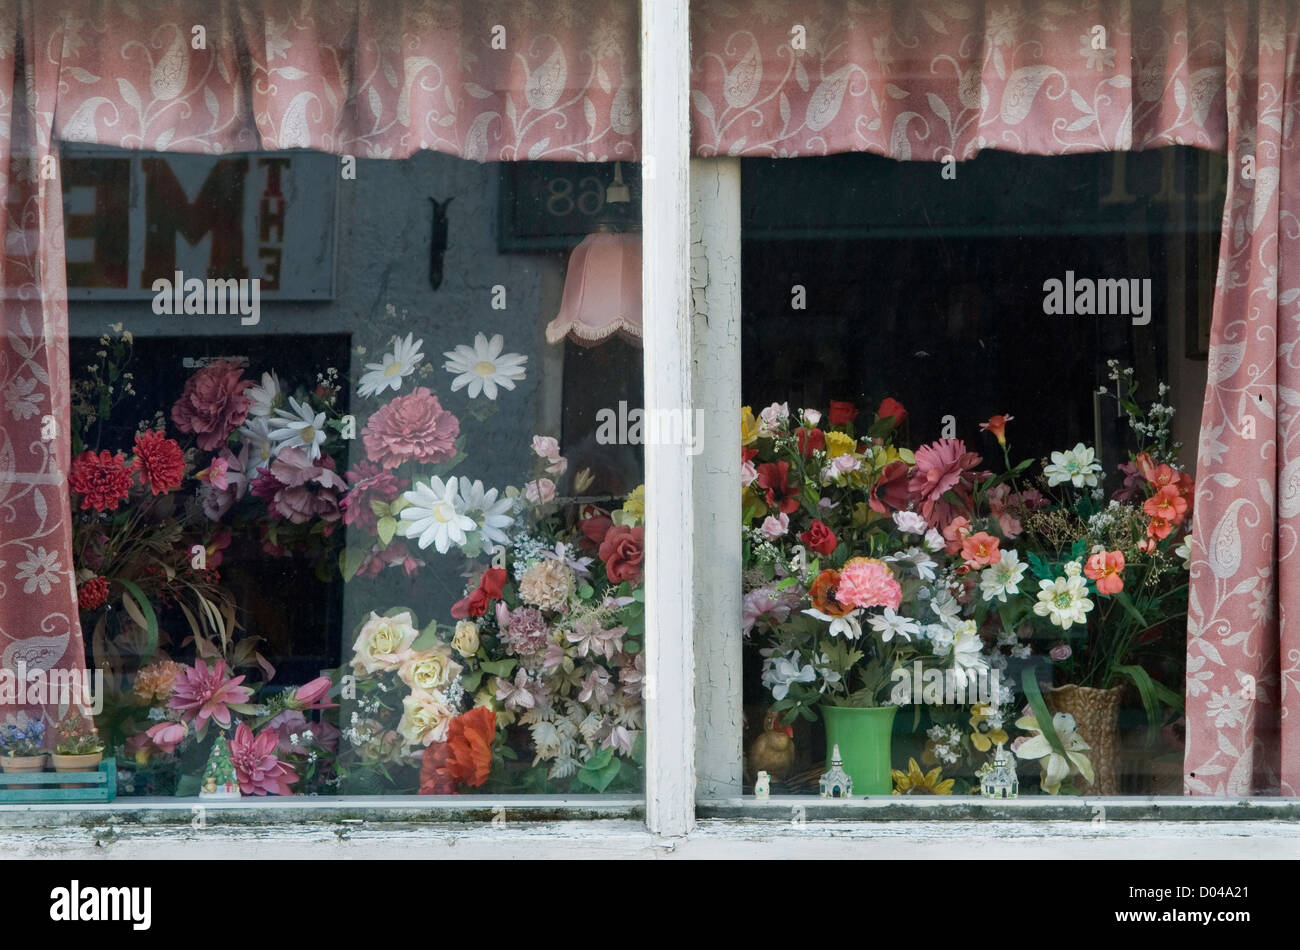 Vitrine domestique en plastique à fleurs. Reflets dans une fenêtre de chalet. Chagford, Devon Angleterre des années 2012 2010 Royaume-Uni. HOMER SYKES Banque D'Images